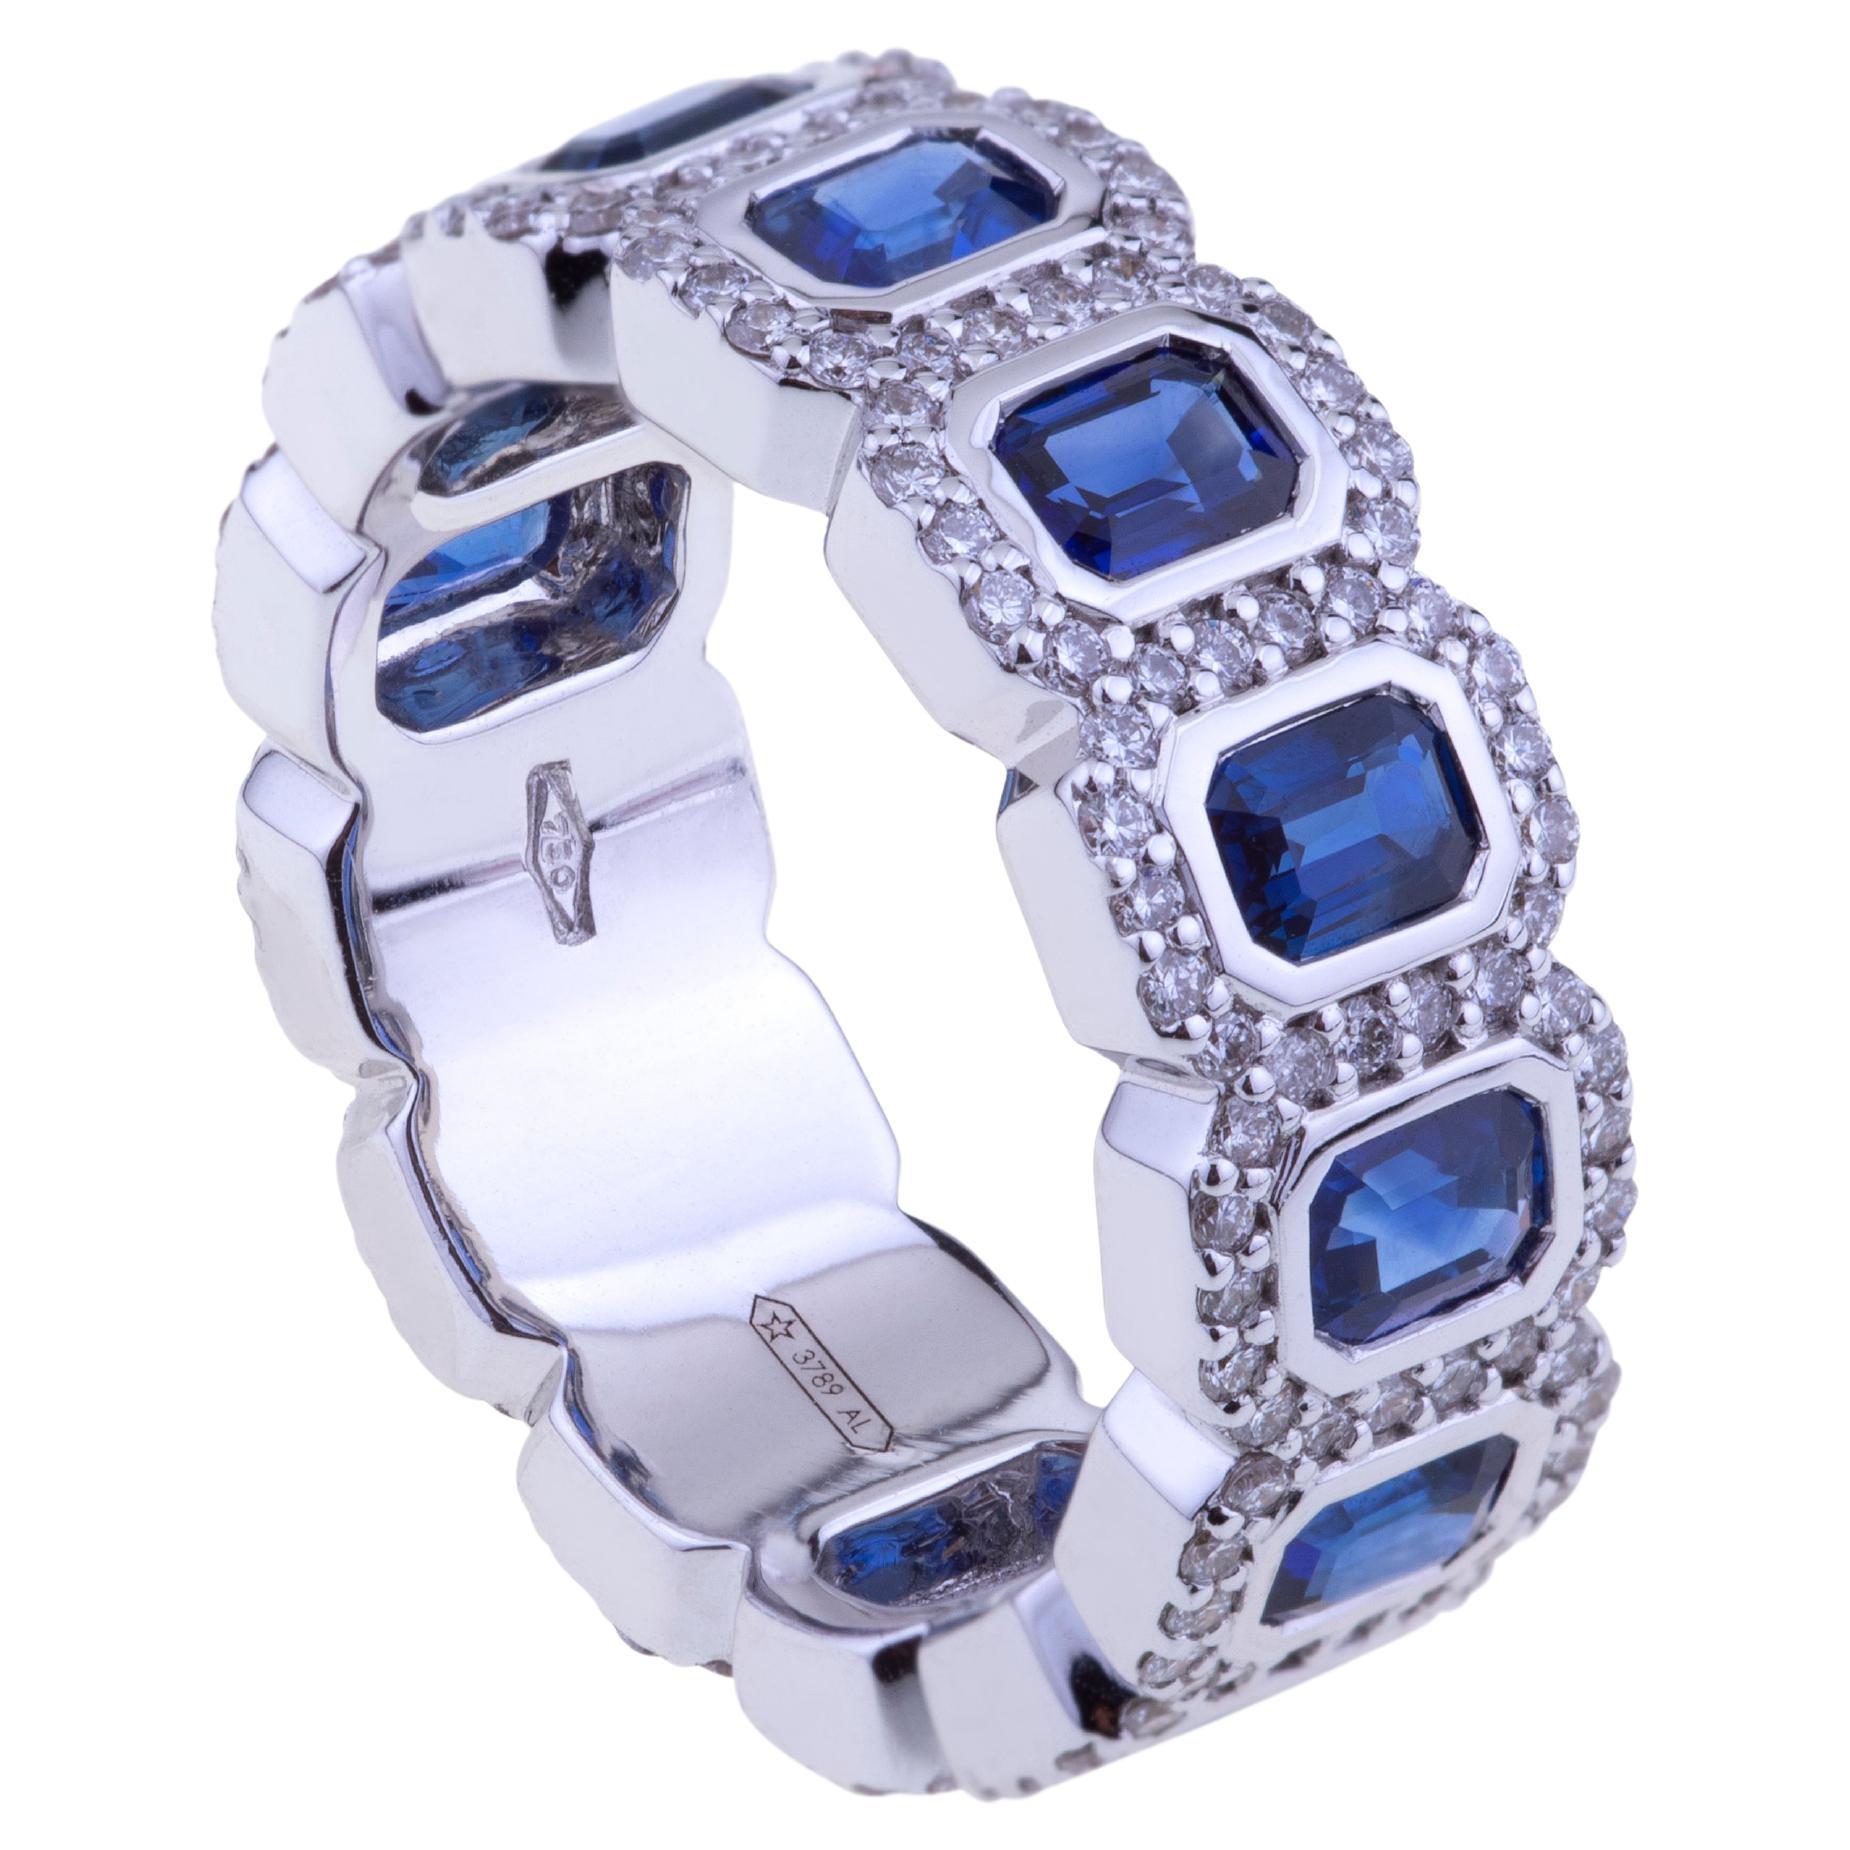 Saphirs bleus octogonaux sertis dans de l'or blanc avec diamants